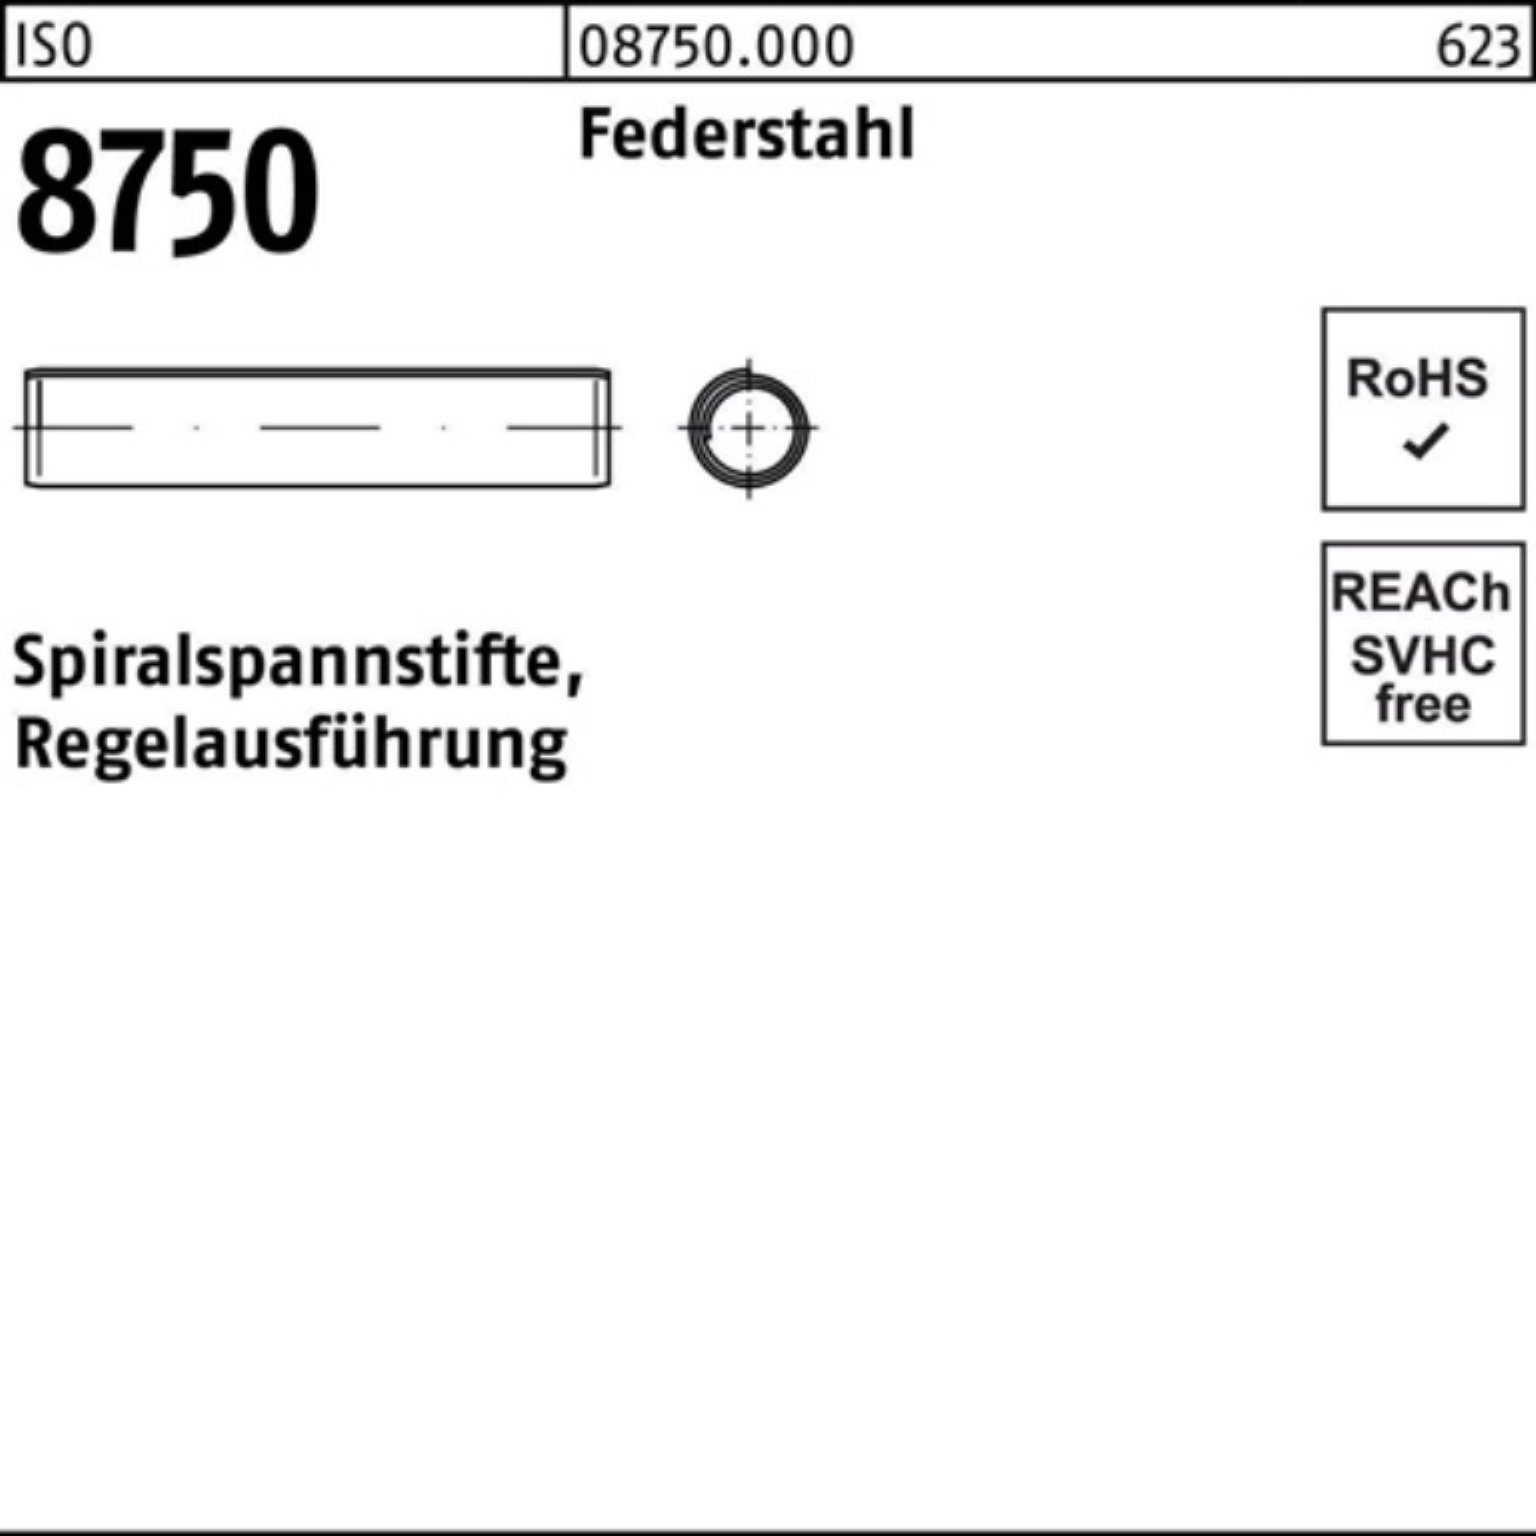 8x Reyher 250er ISO Spiralspannstift Federstahl S 250 Pack Regelausf. 30 8750 Spannstift